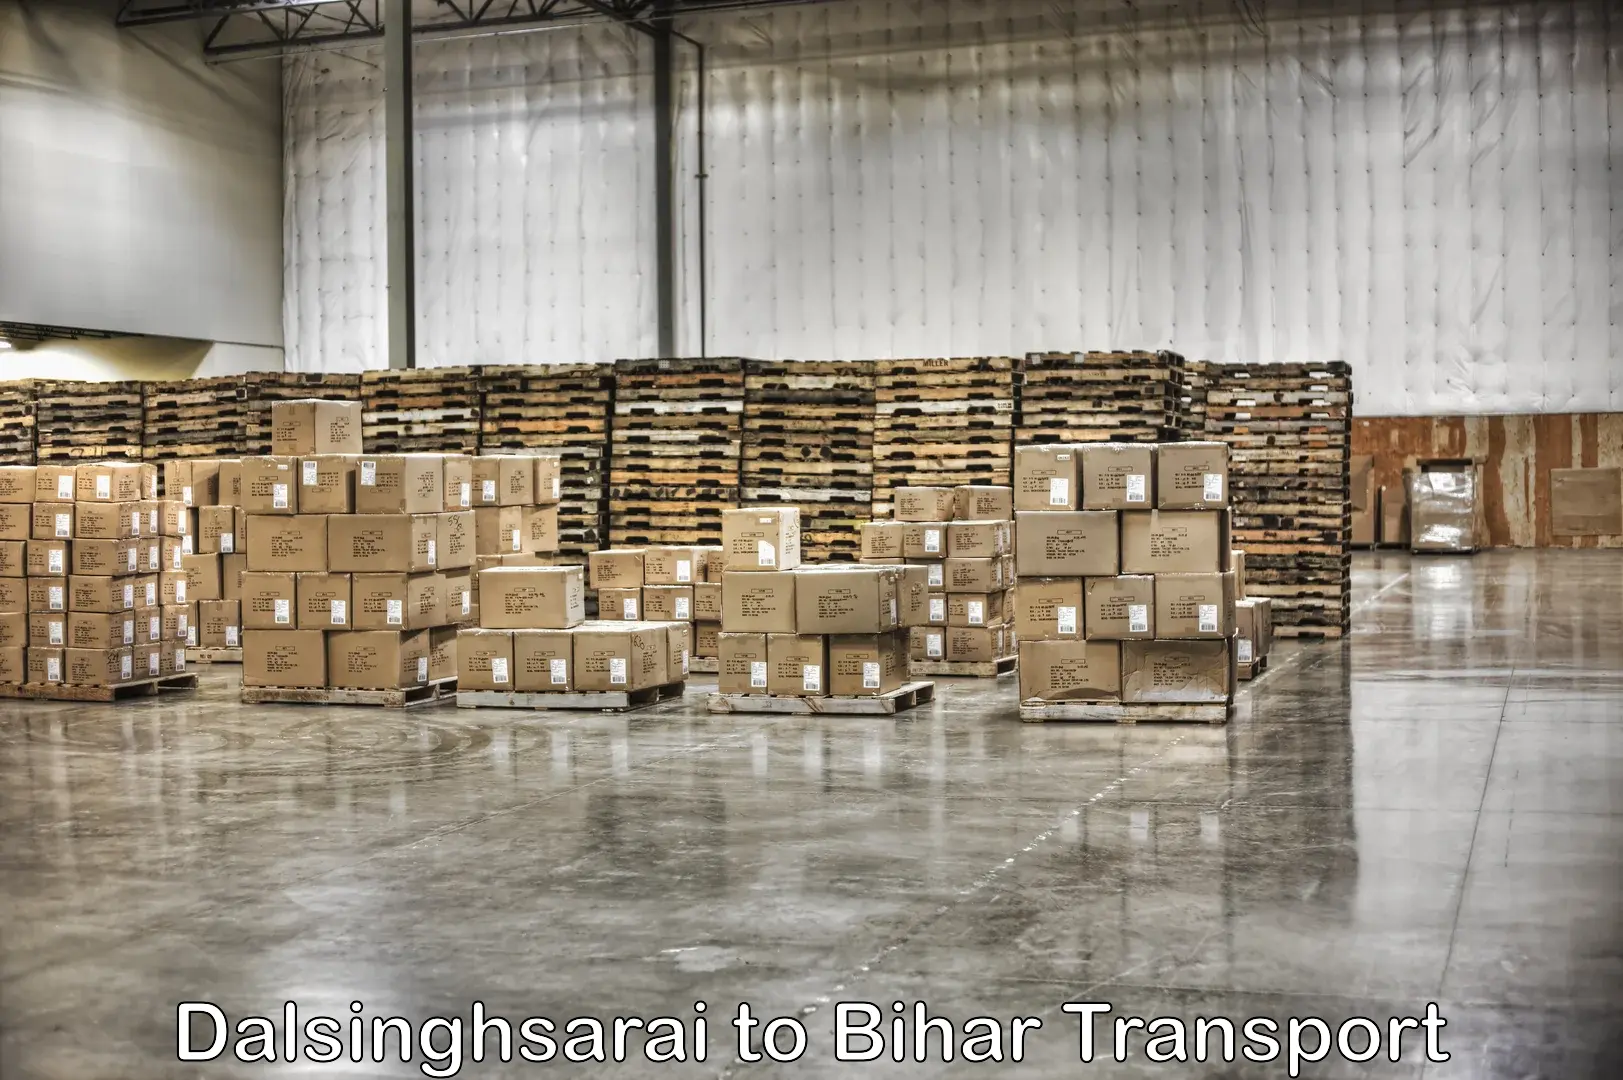 Delivery service Dalsinghsarai to Aurai